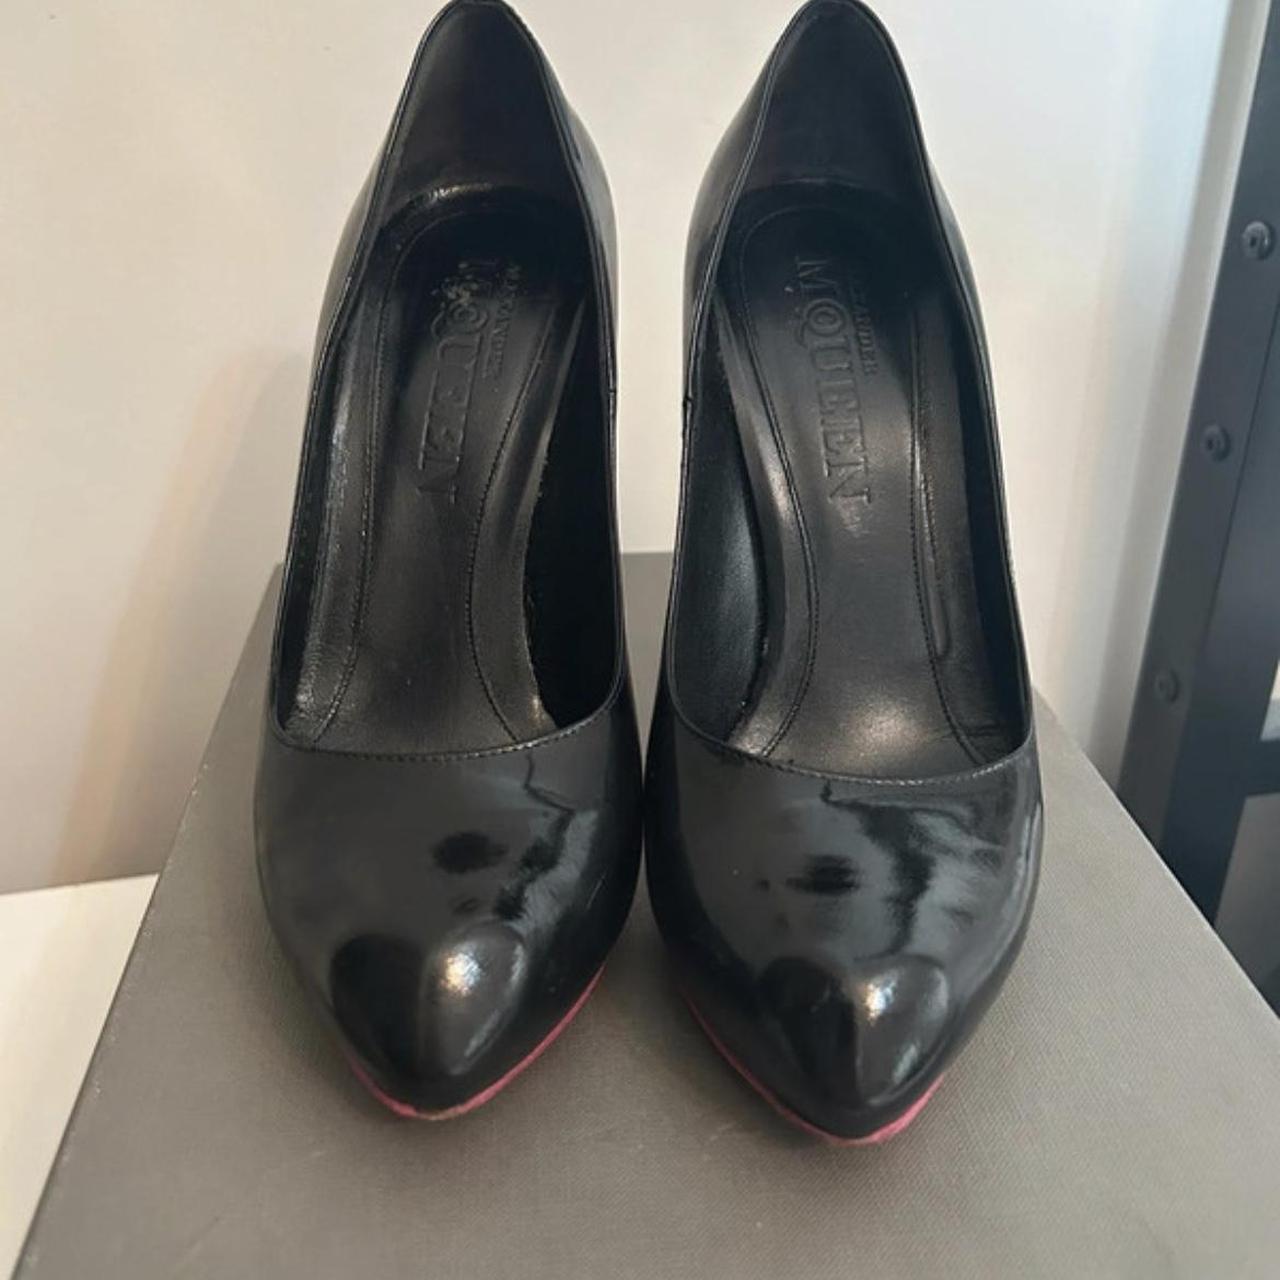 Alexander McQueen black patent heels - Depop